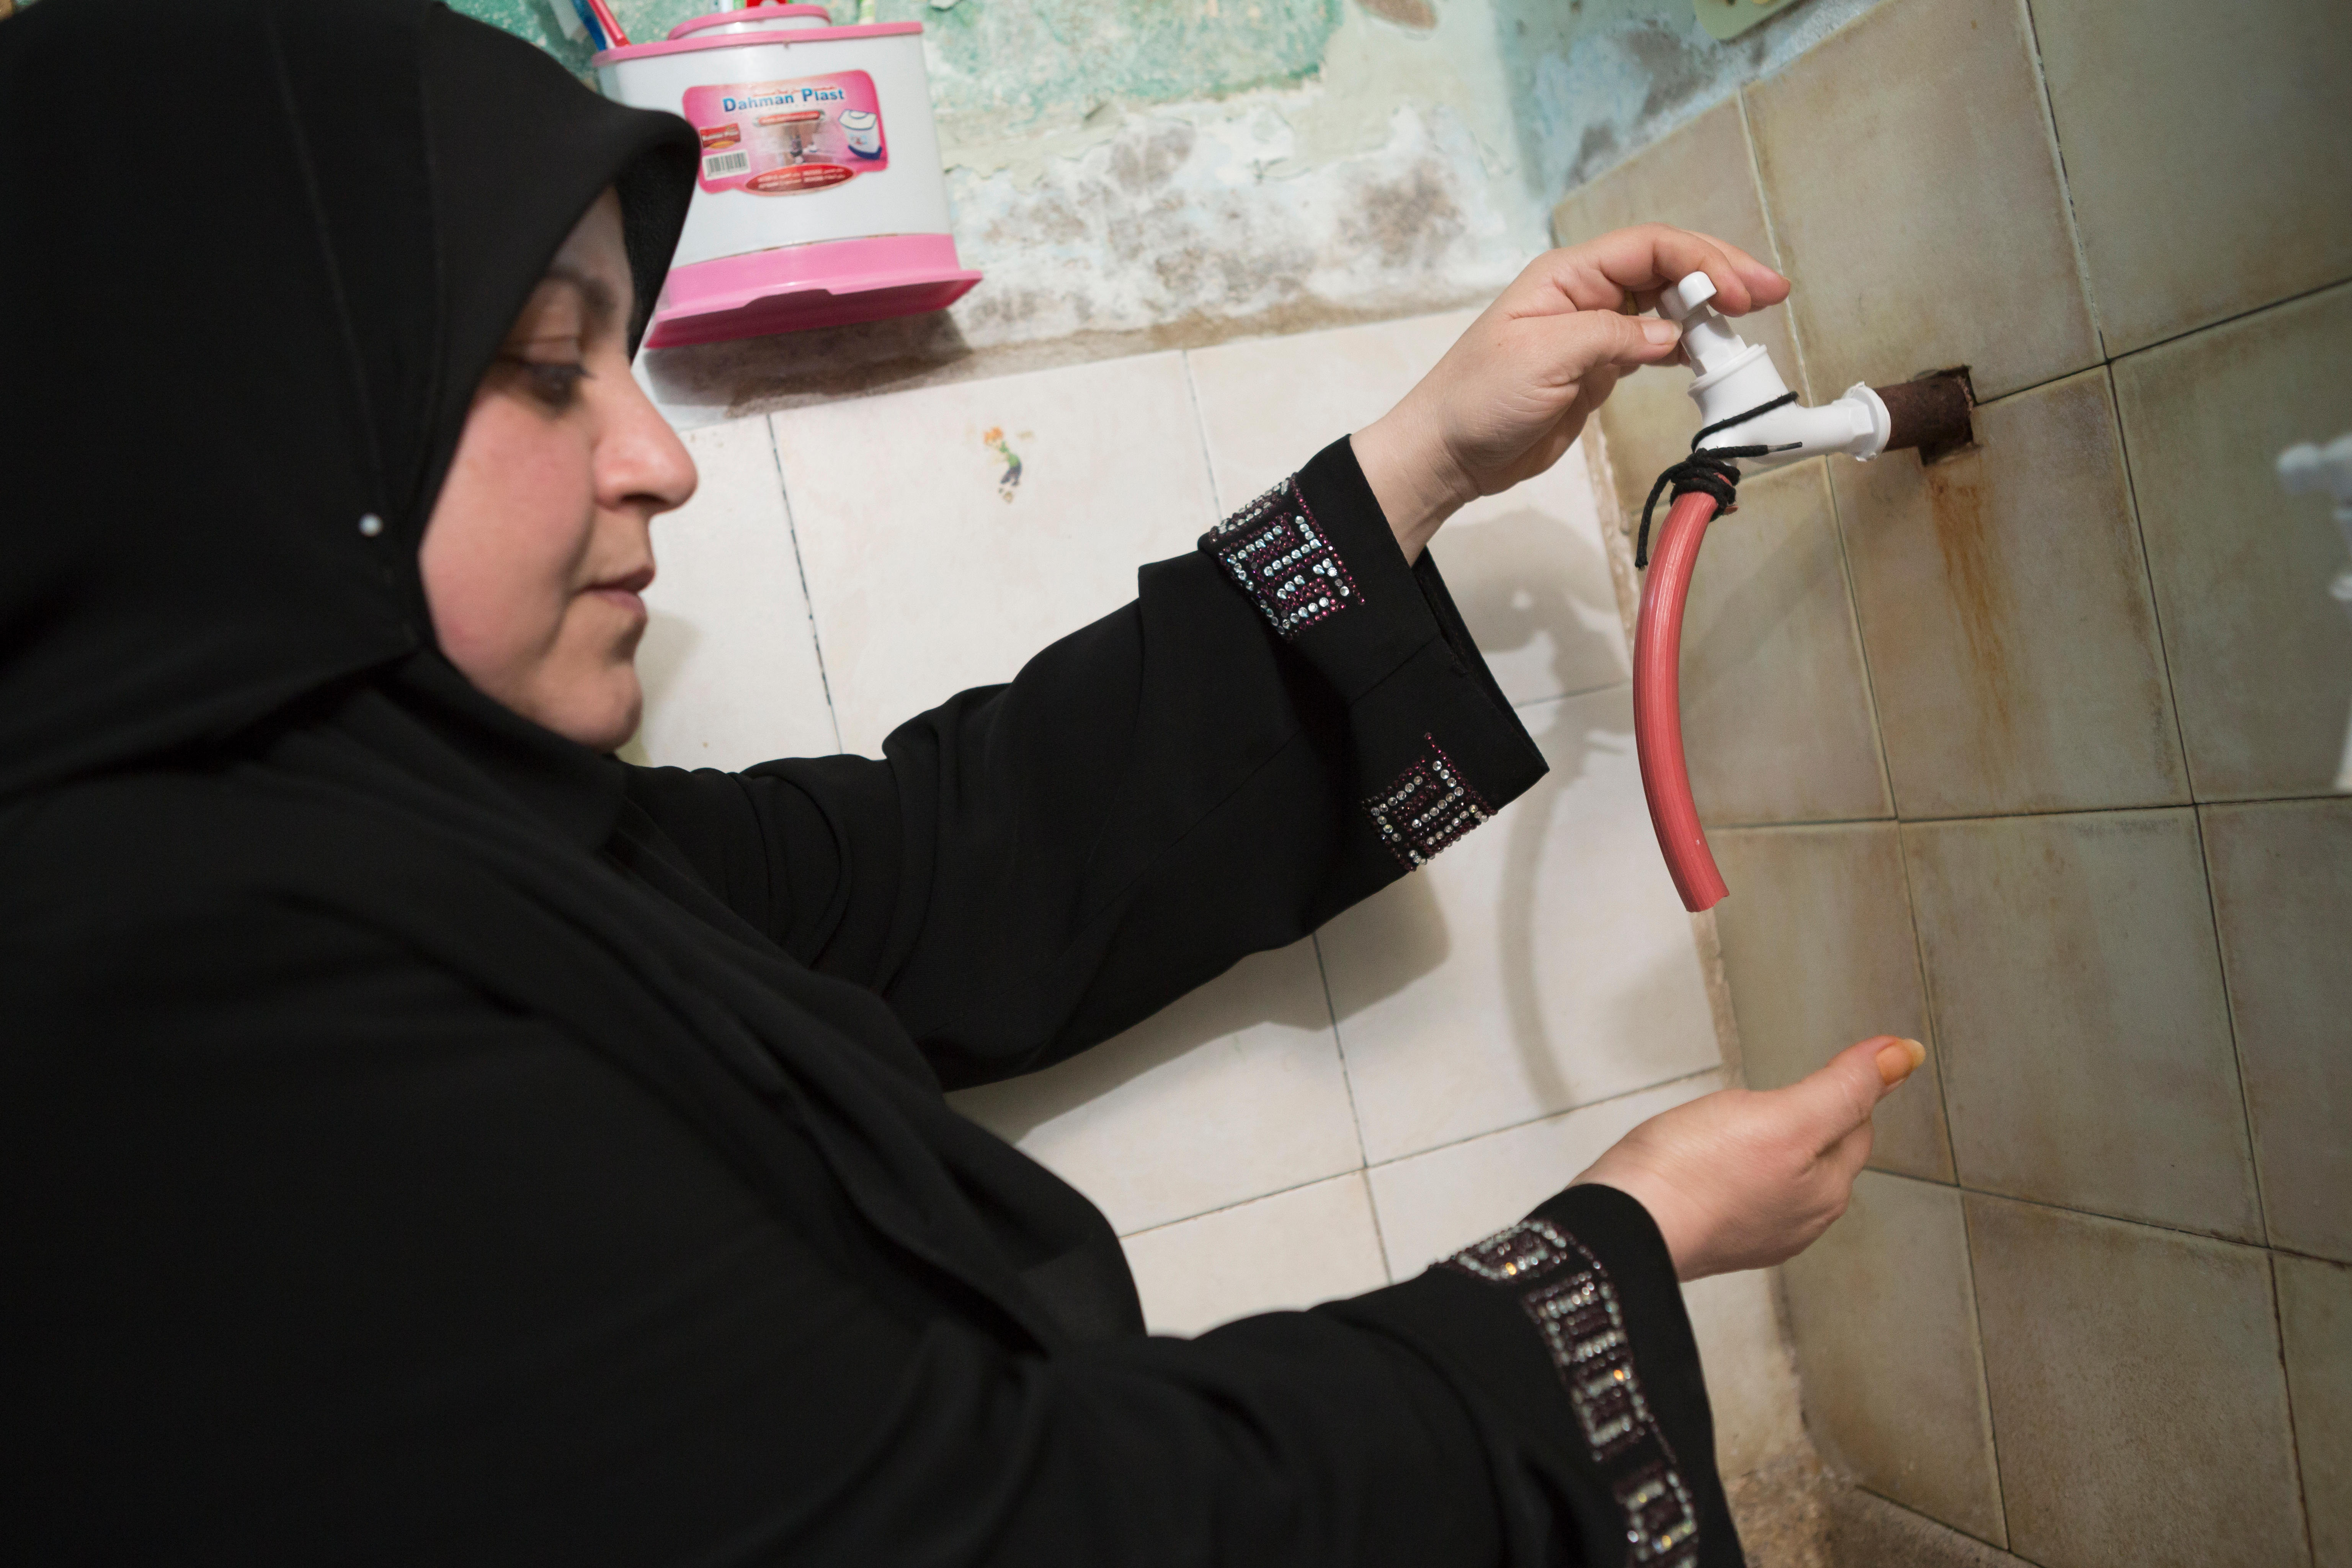 يعاني الكثير من الناس، رجالاً ونساءً، في منطقة الشرق الأوسط من نقص المياه.